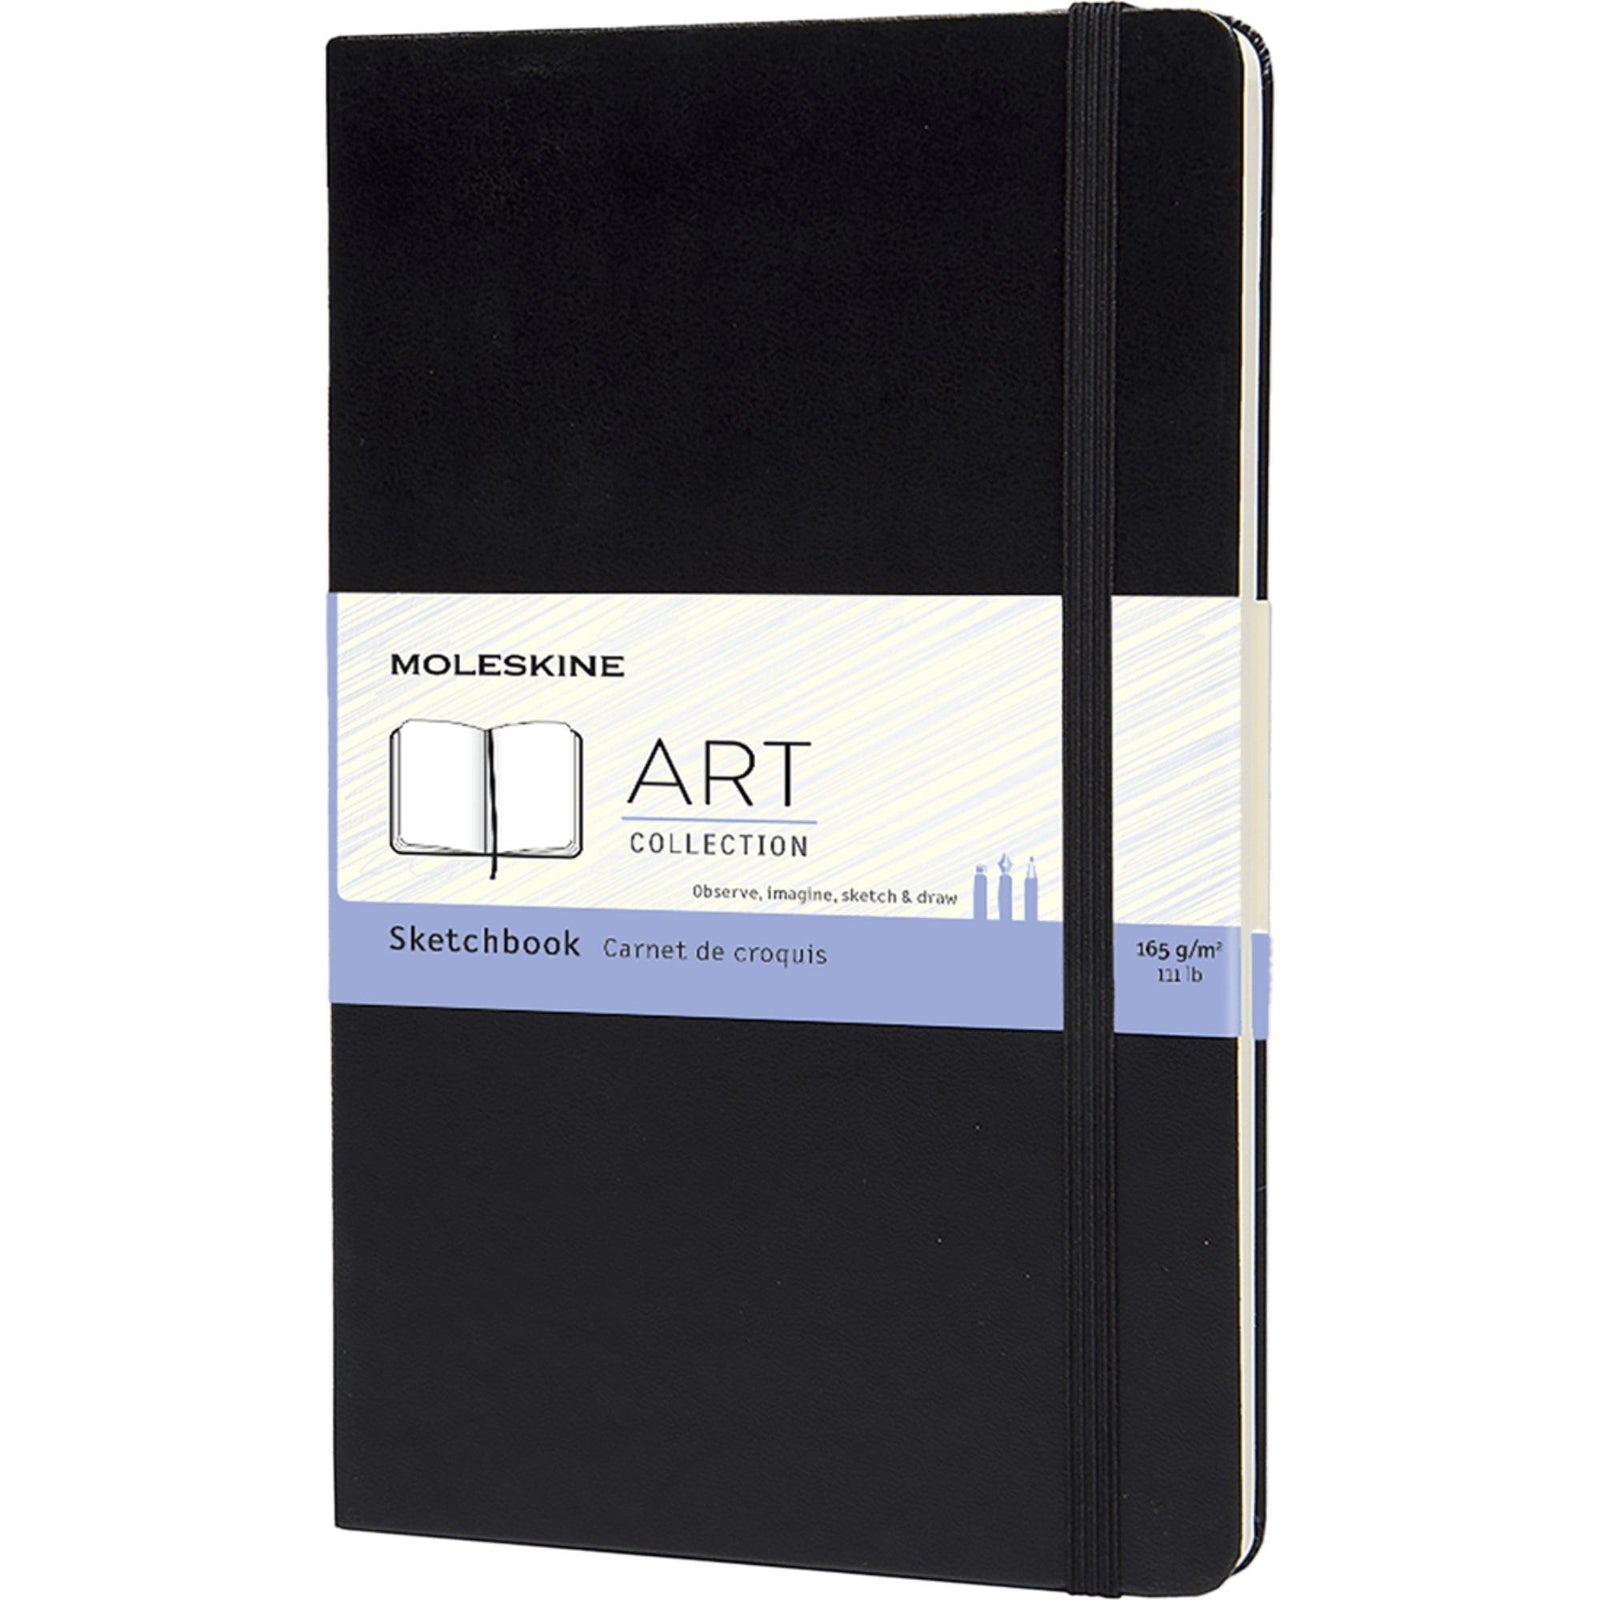 Moleskine Sketchbook Art Collection, Large 13x21cm, Black